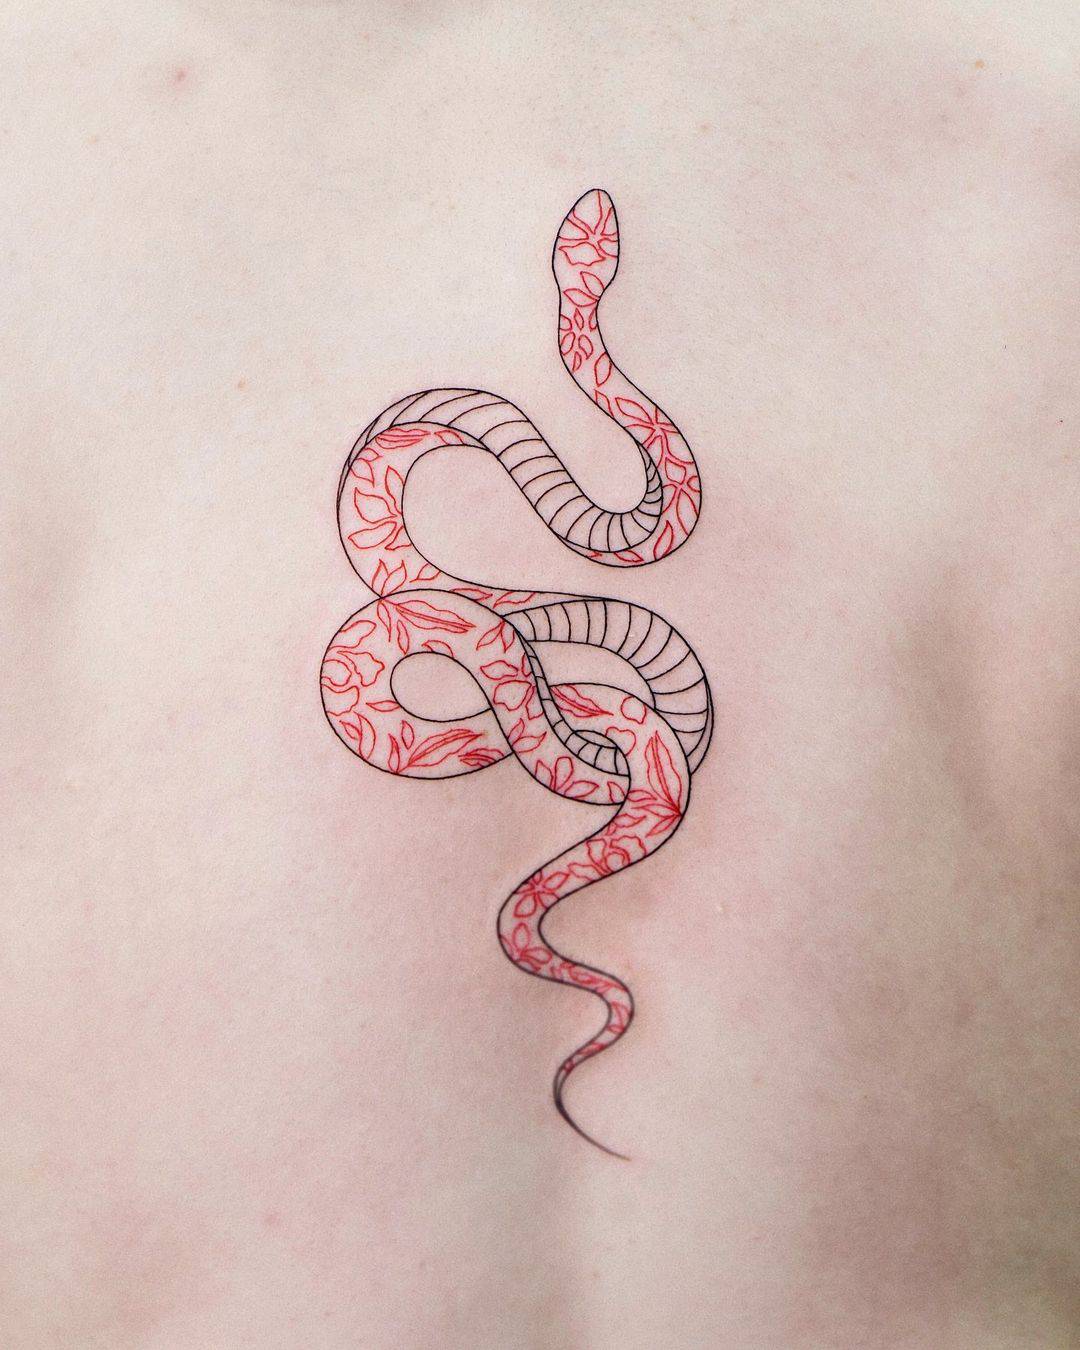 Значение татуировки змеи: каждая культура имеет уникальное мировоззрение и восприятие